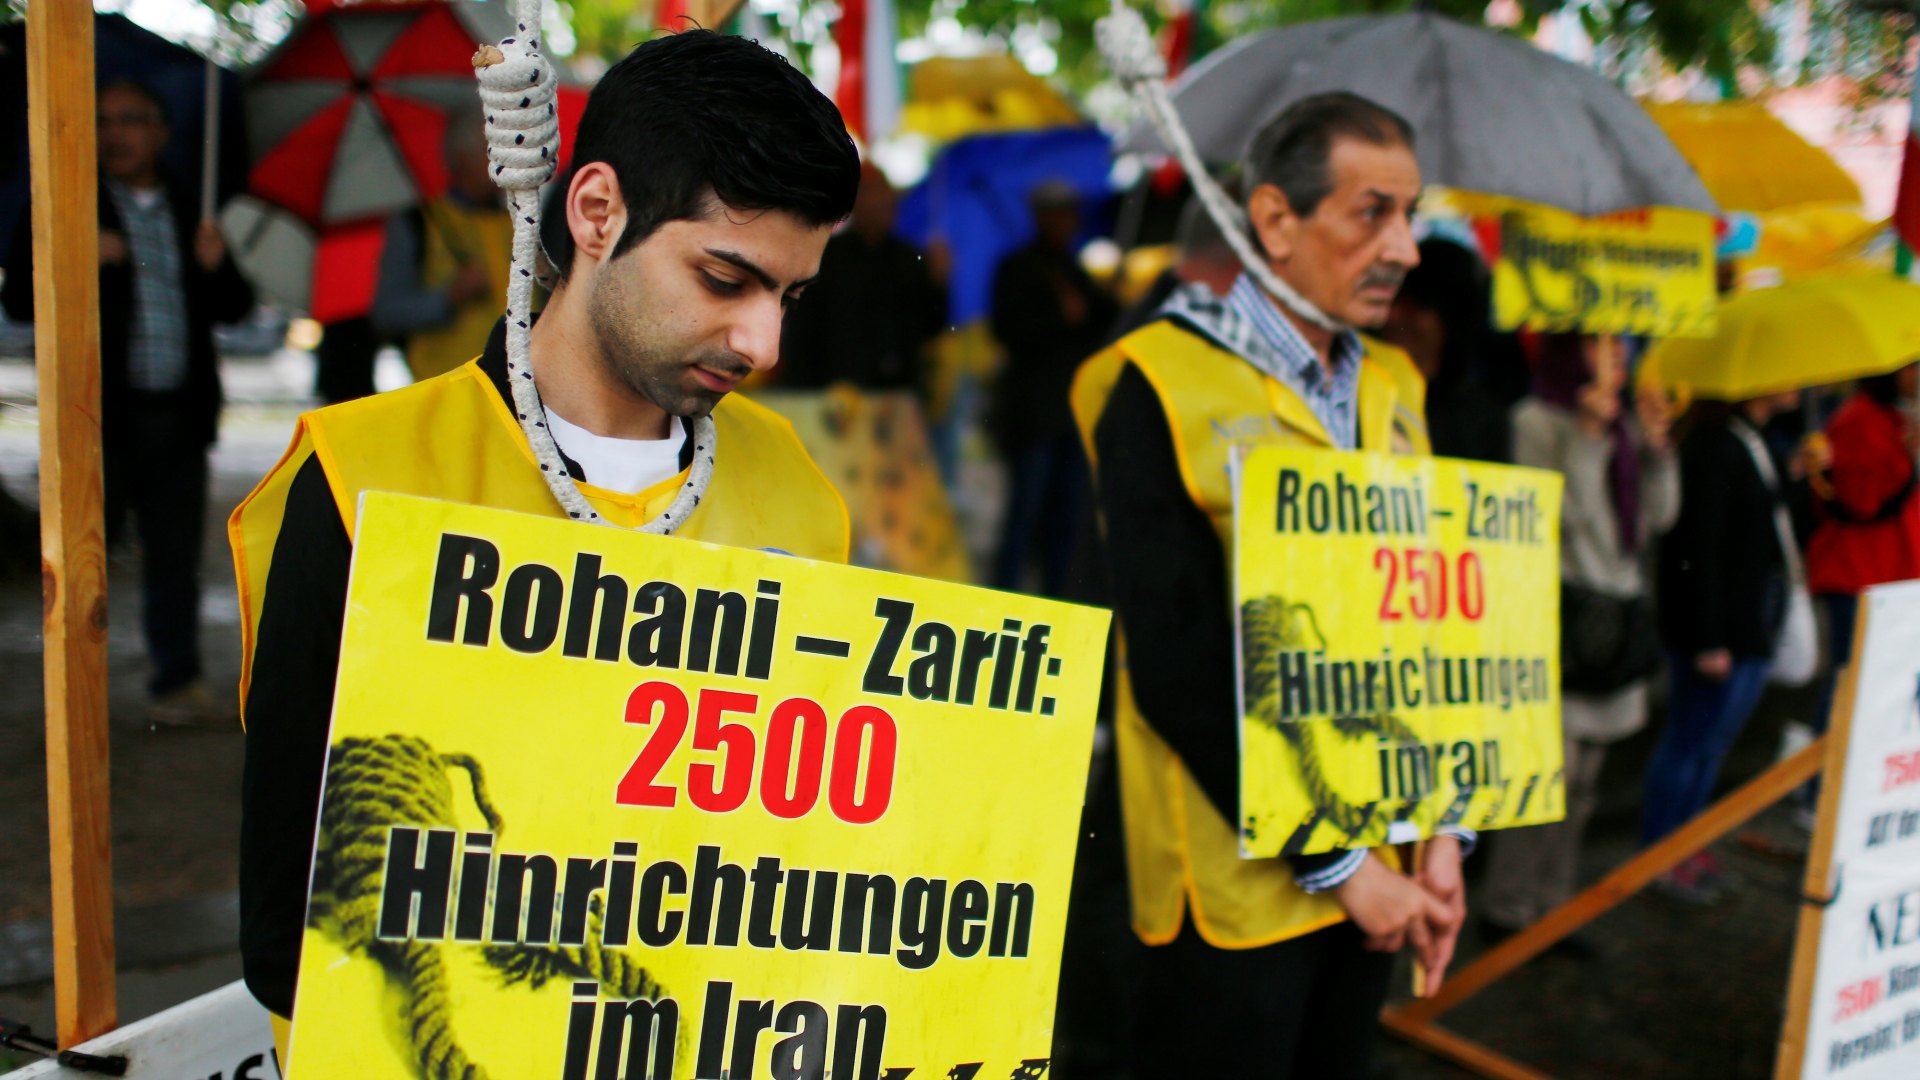 Irán ejecuta al joven Alireza Tajiki, detenido cuando solo tenía 15 años